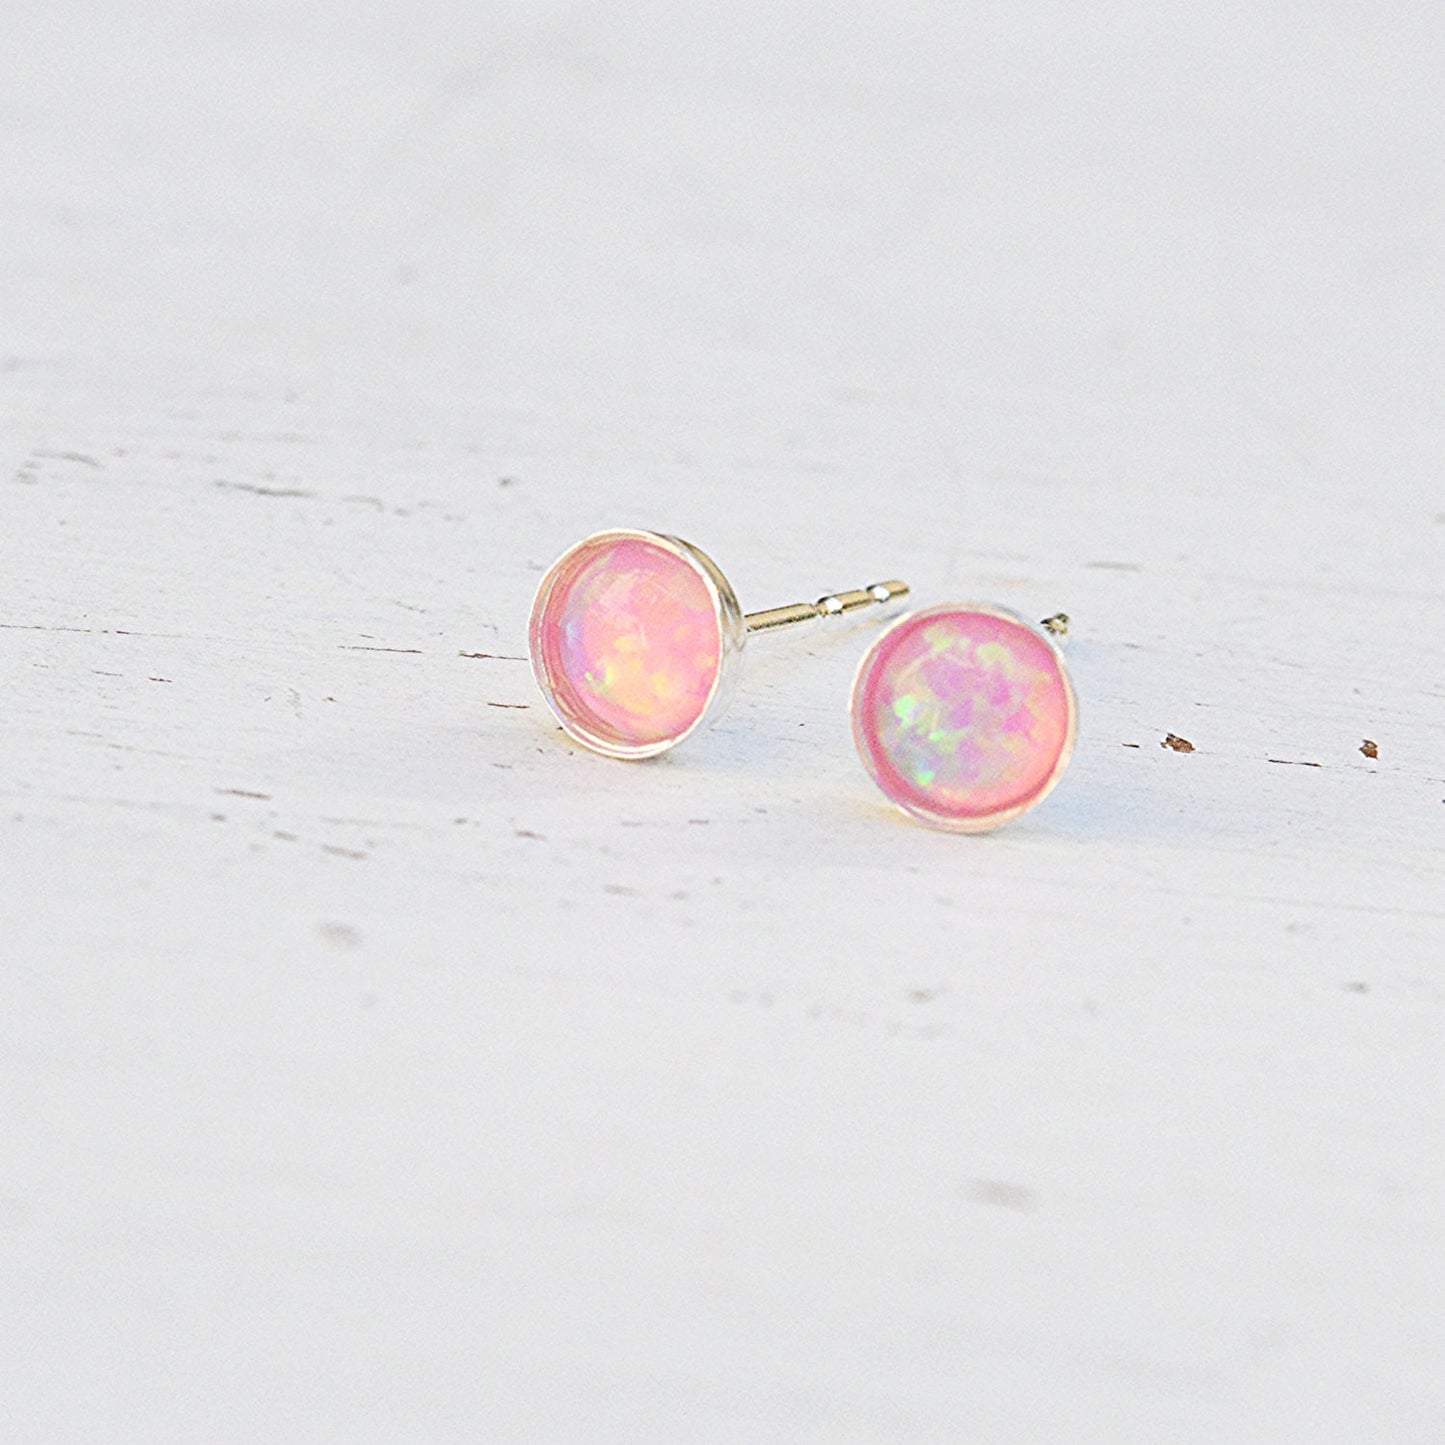 silver opal earrings